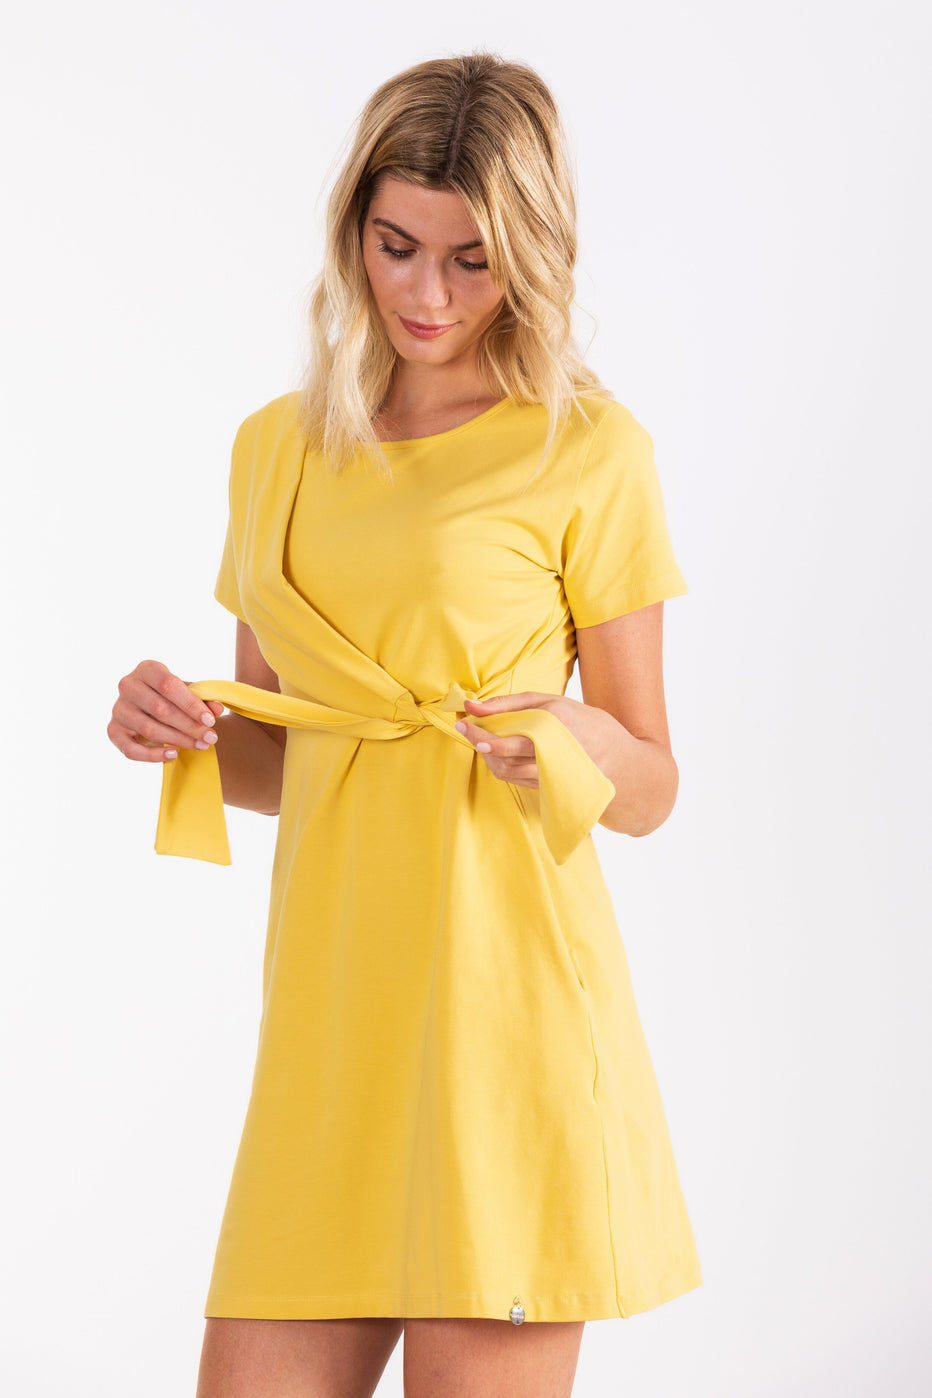 Vestido amarillo corto anudado LolitasyL - lolitasyl.com